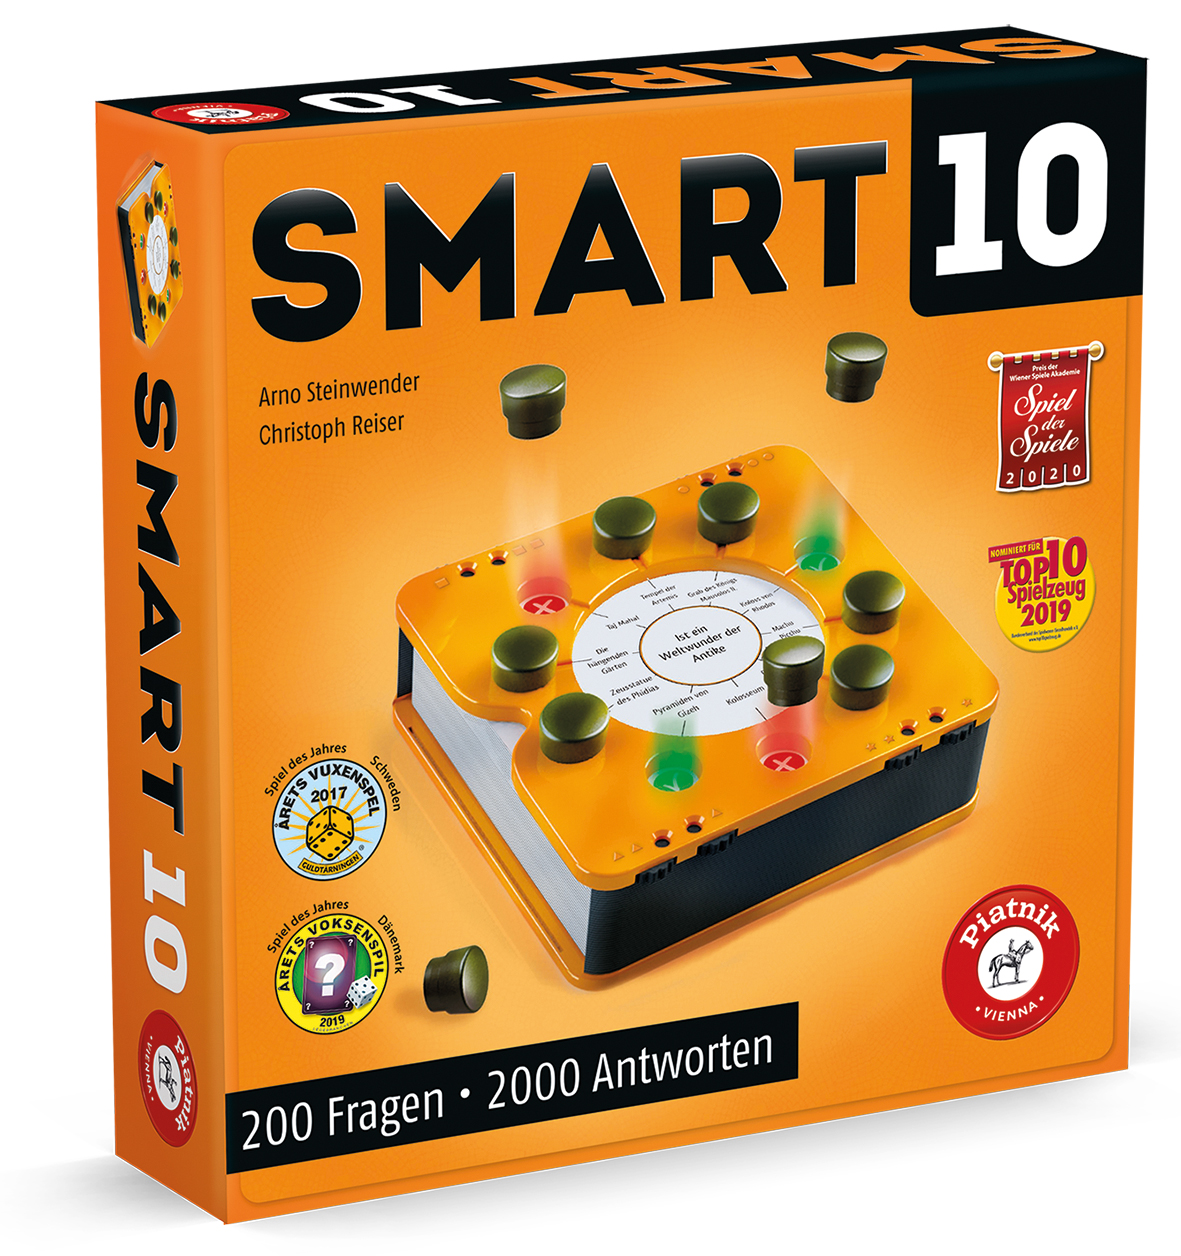 Smart 10 Spiel der Spiele 2020